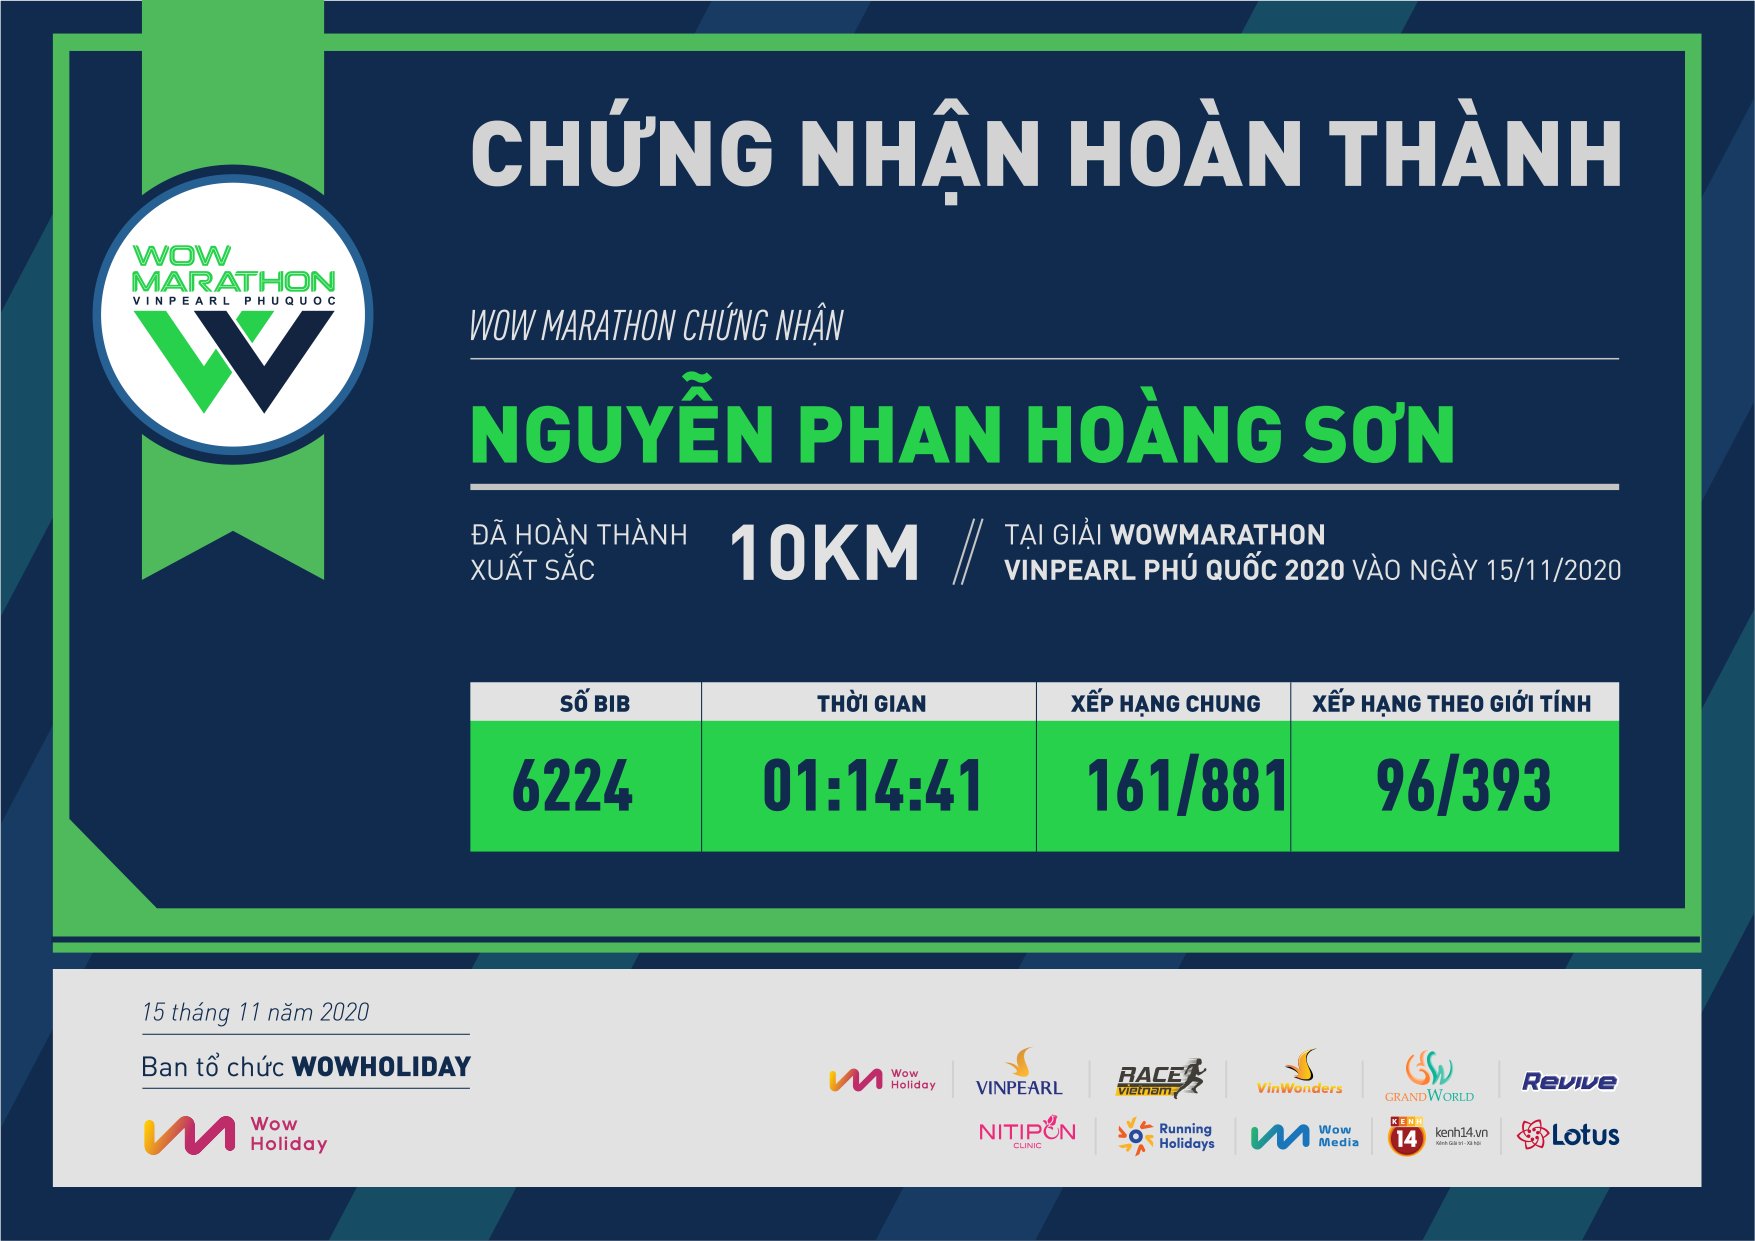 6224 - Nguyễn Phan Hoàng Sơn